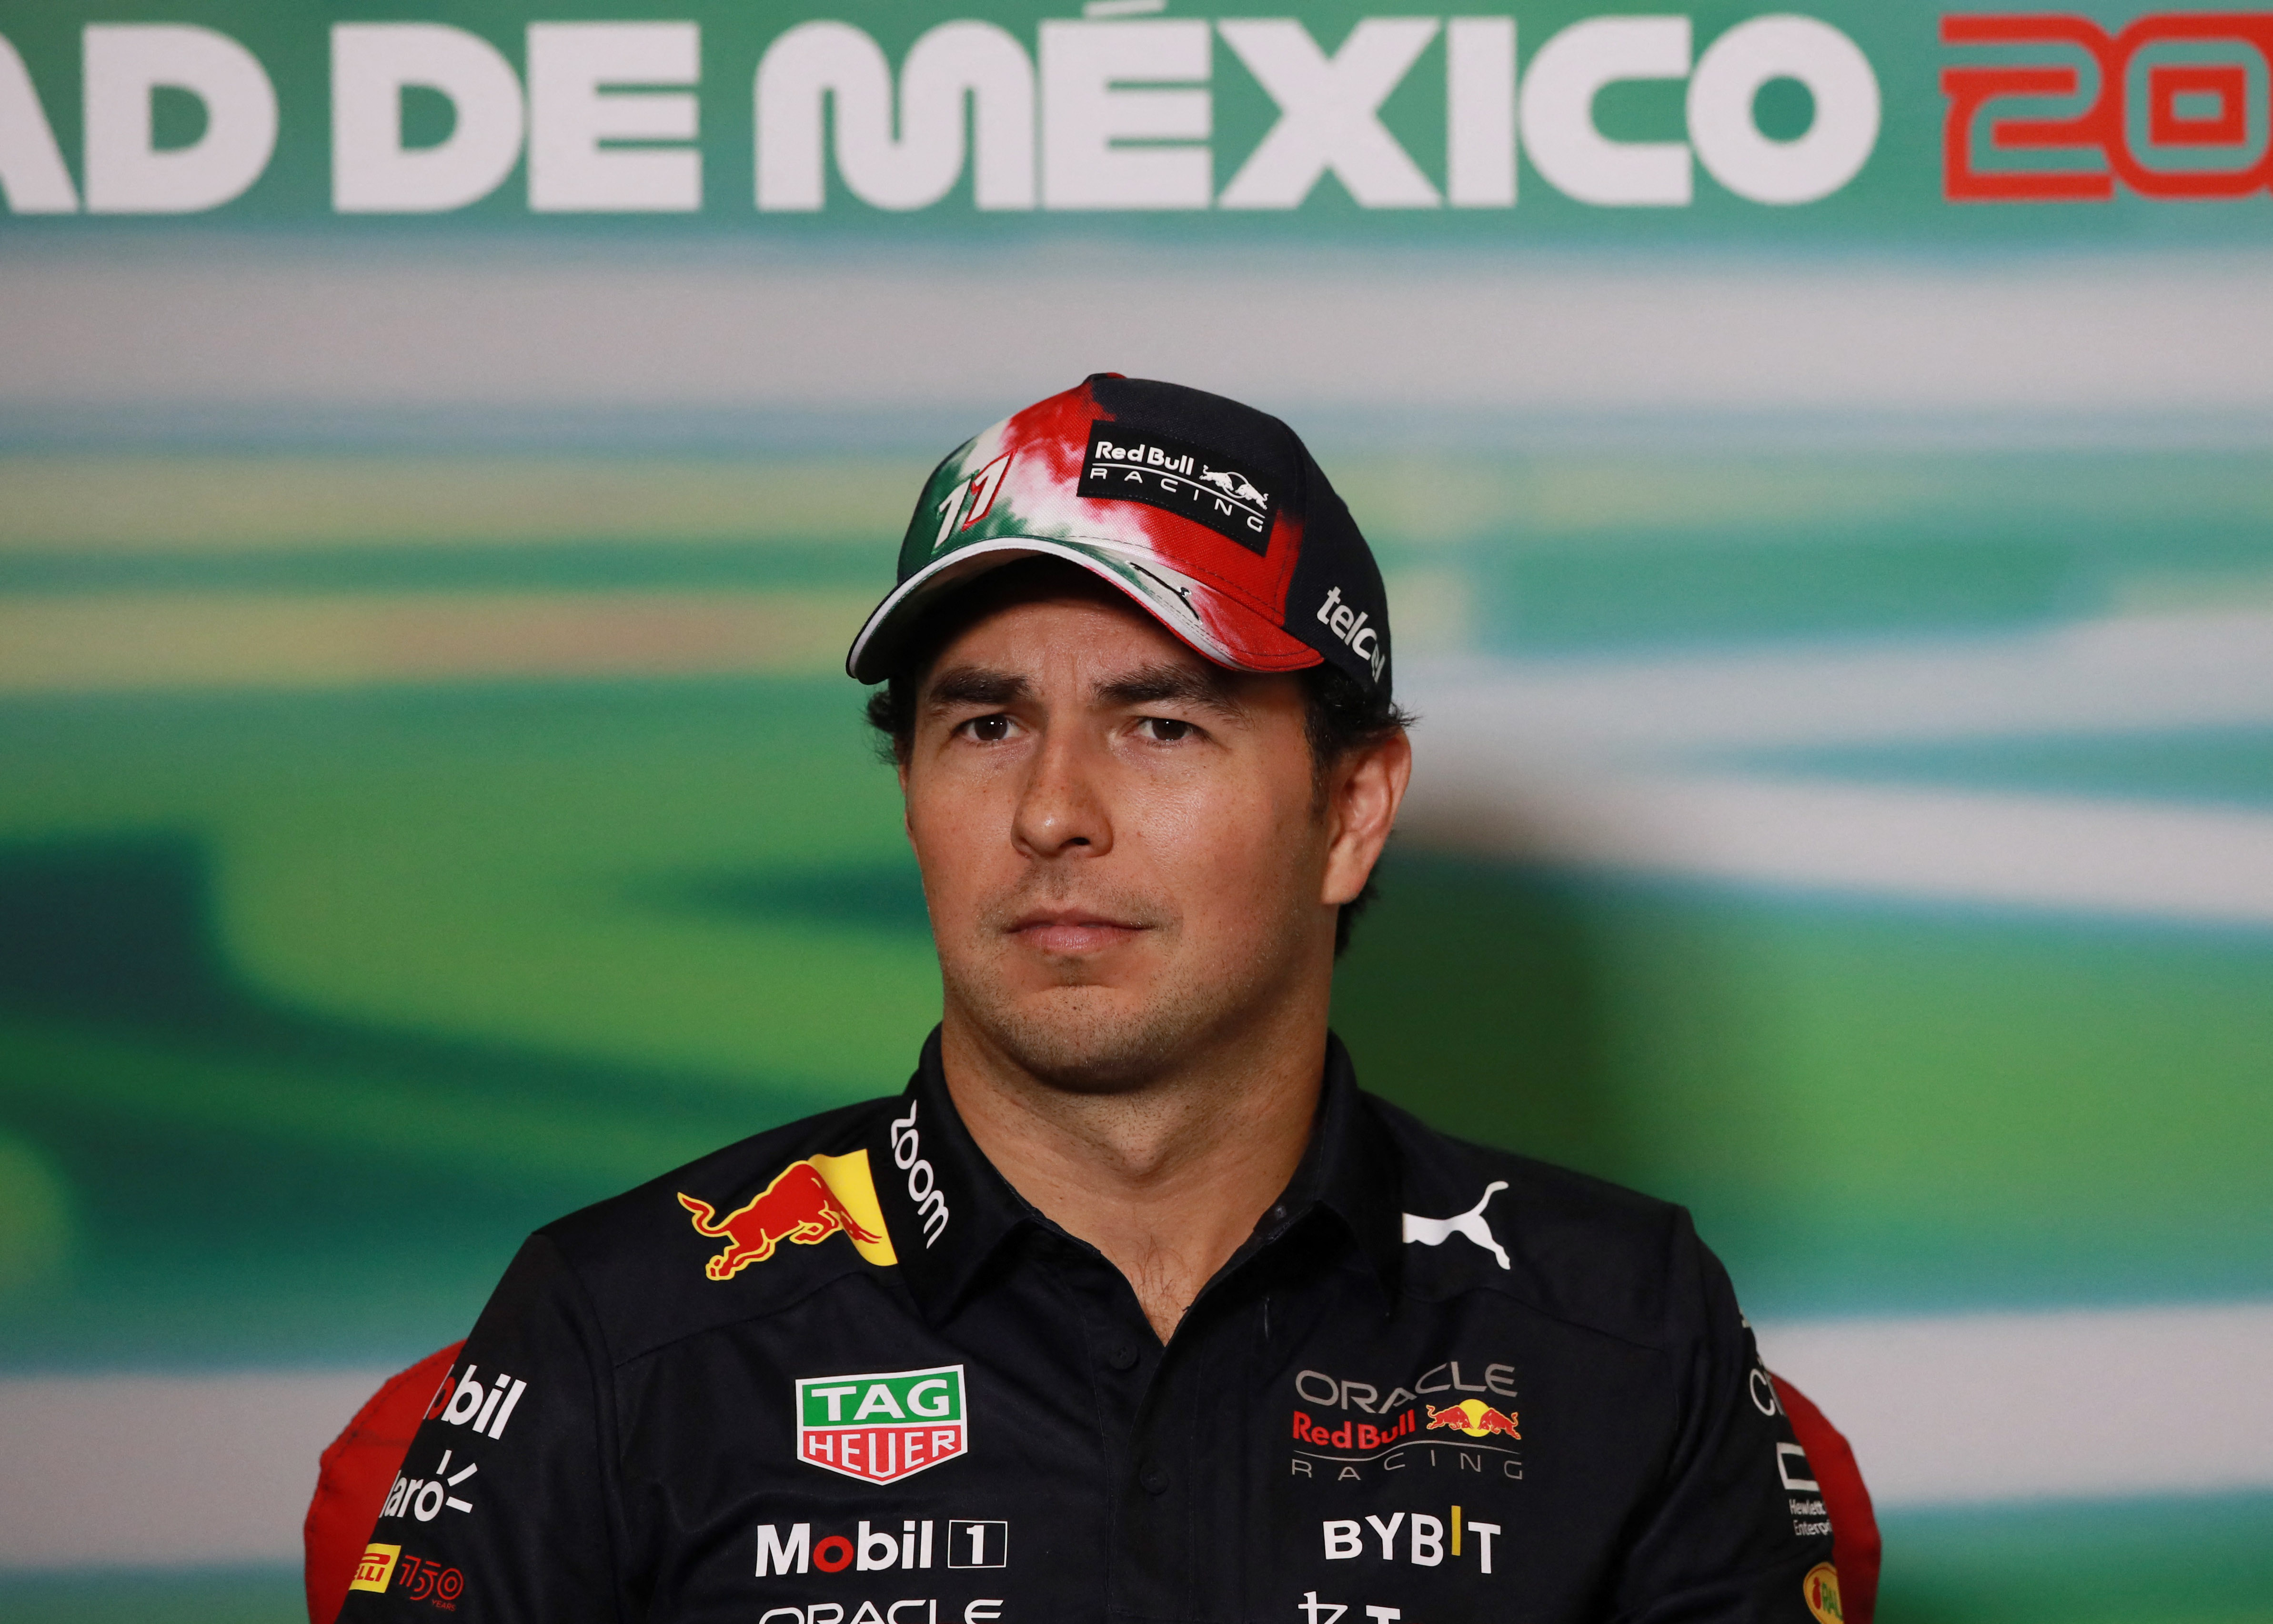 La apuesta de Arturo Elías Ayub si Checo Pérez queda subcampeón en la Fórmula 1